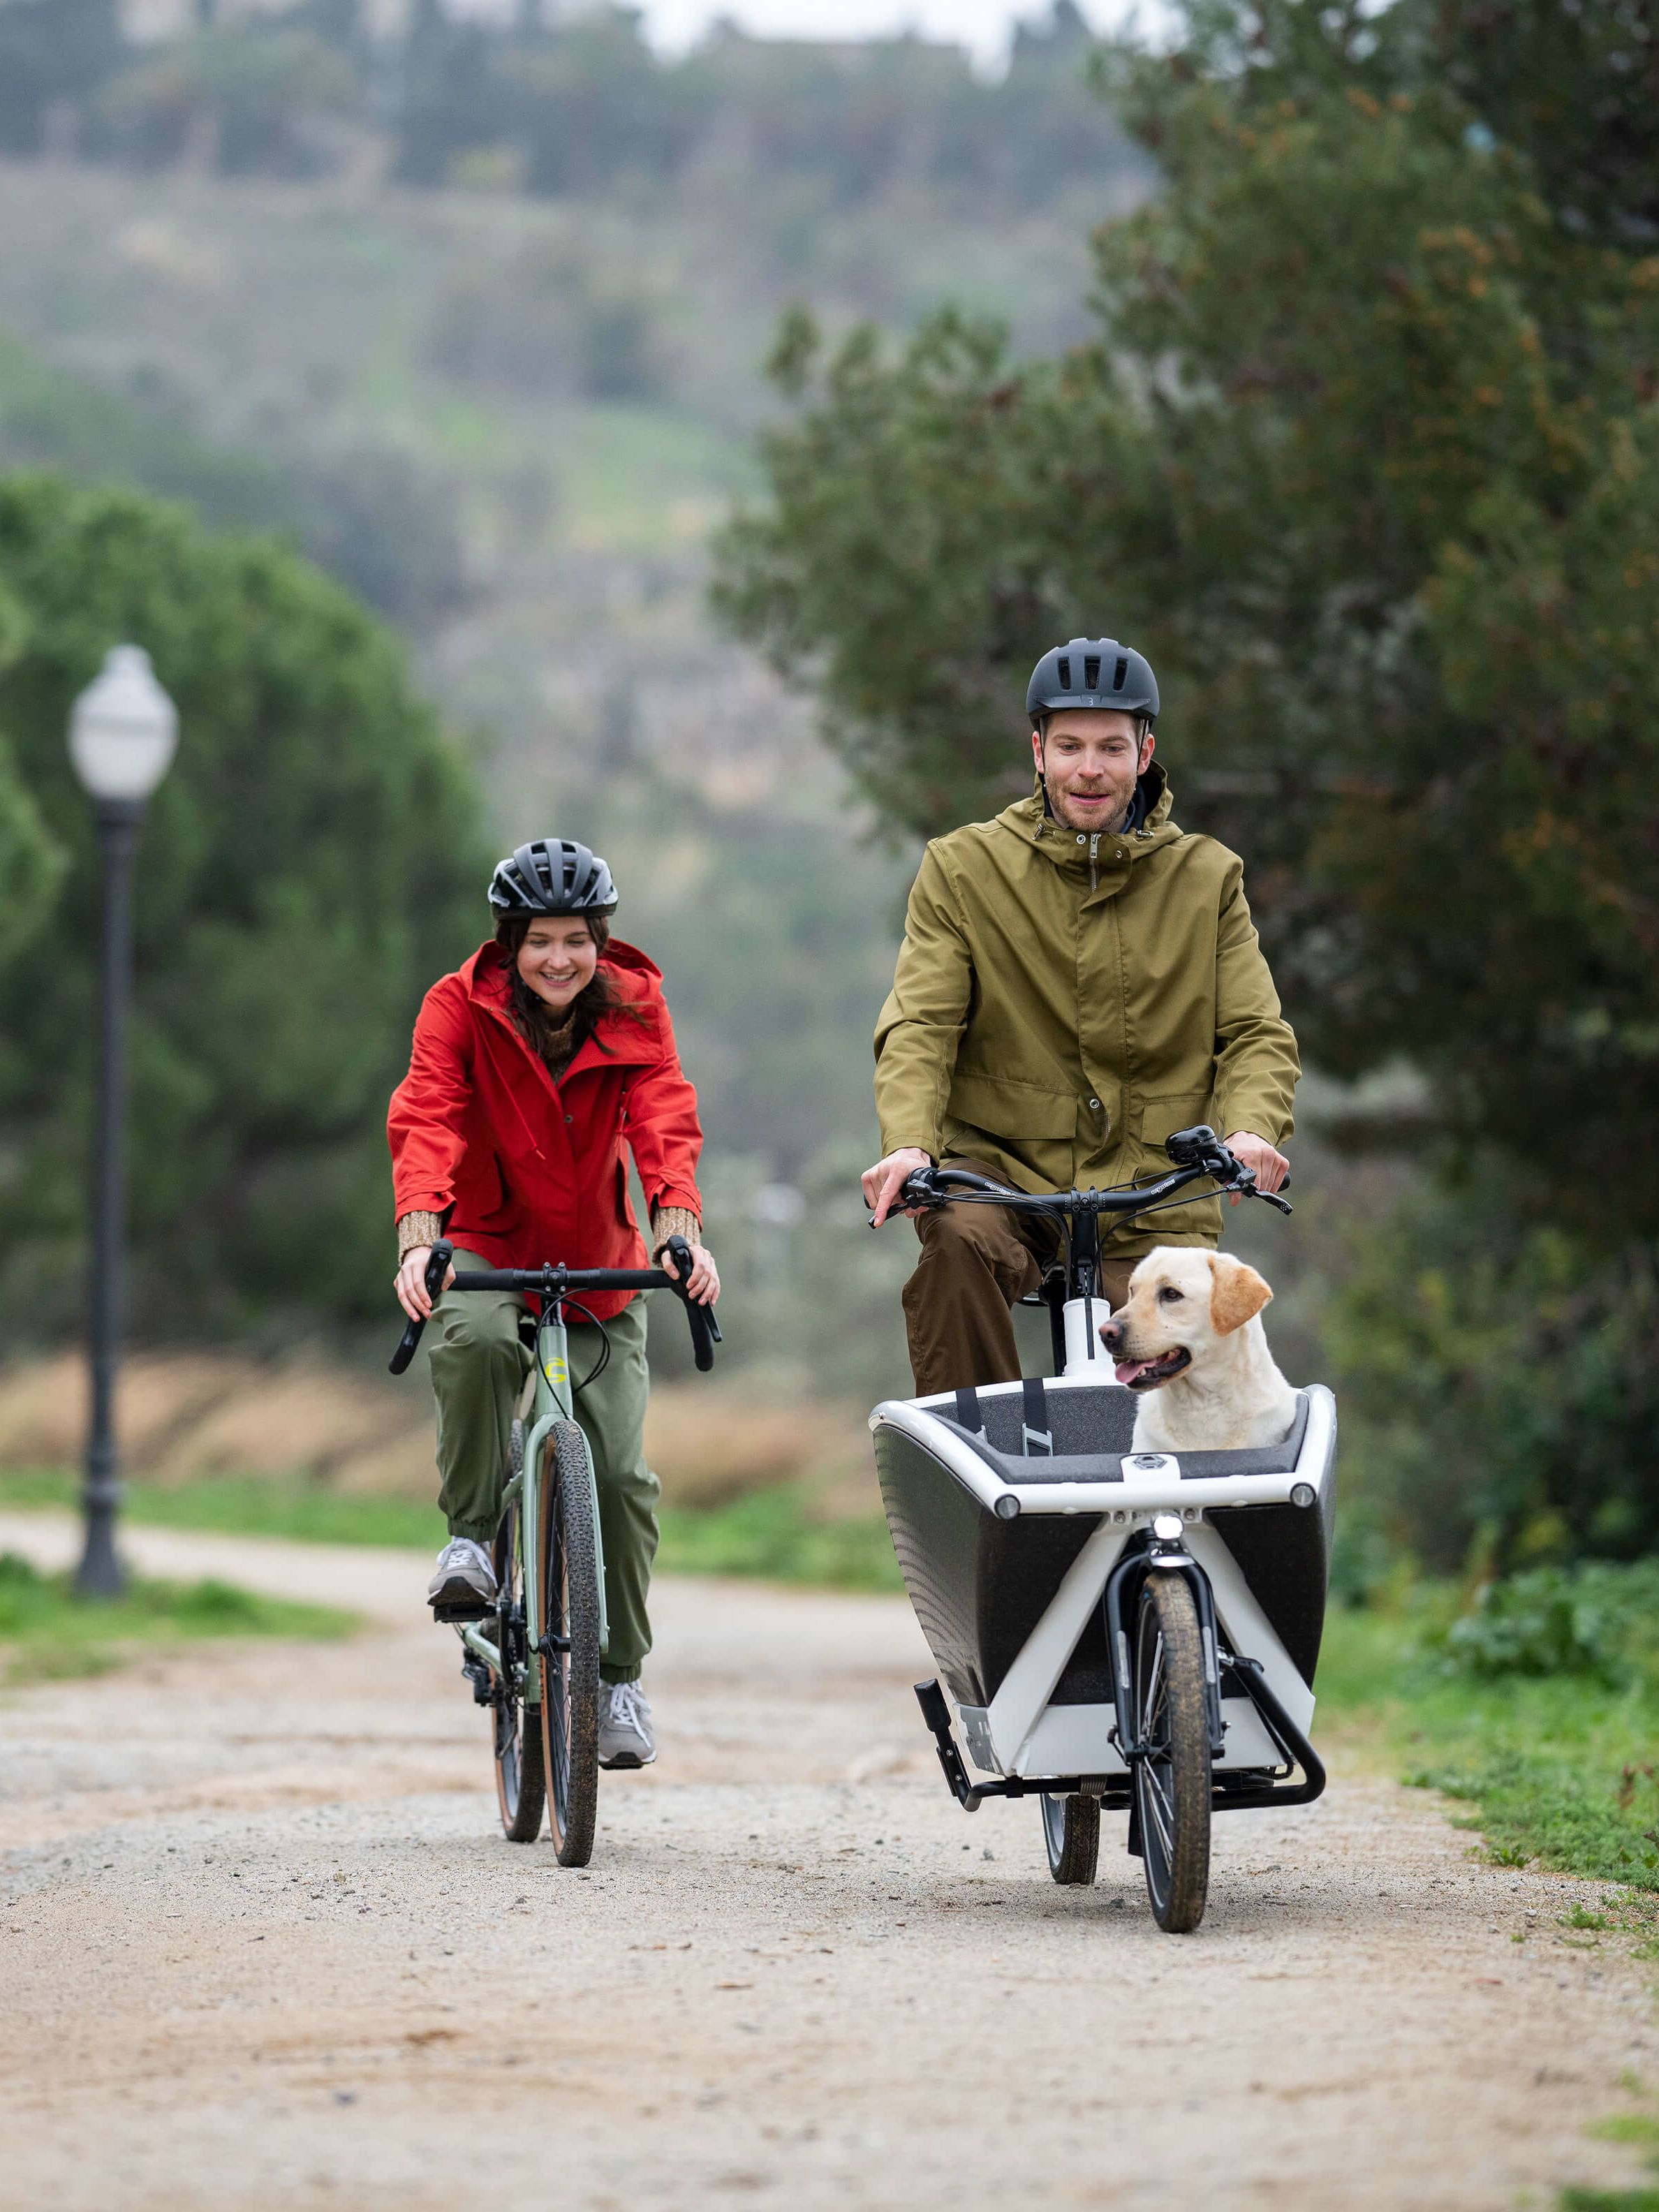 Zwei Menschen auf Fahrrädern. Aus dem Gepäckträger des einen Rades schaut ein Labrador heraus.